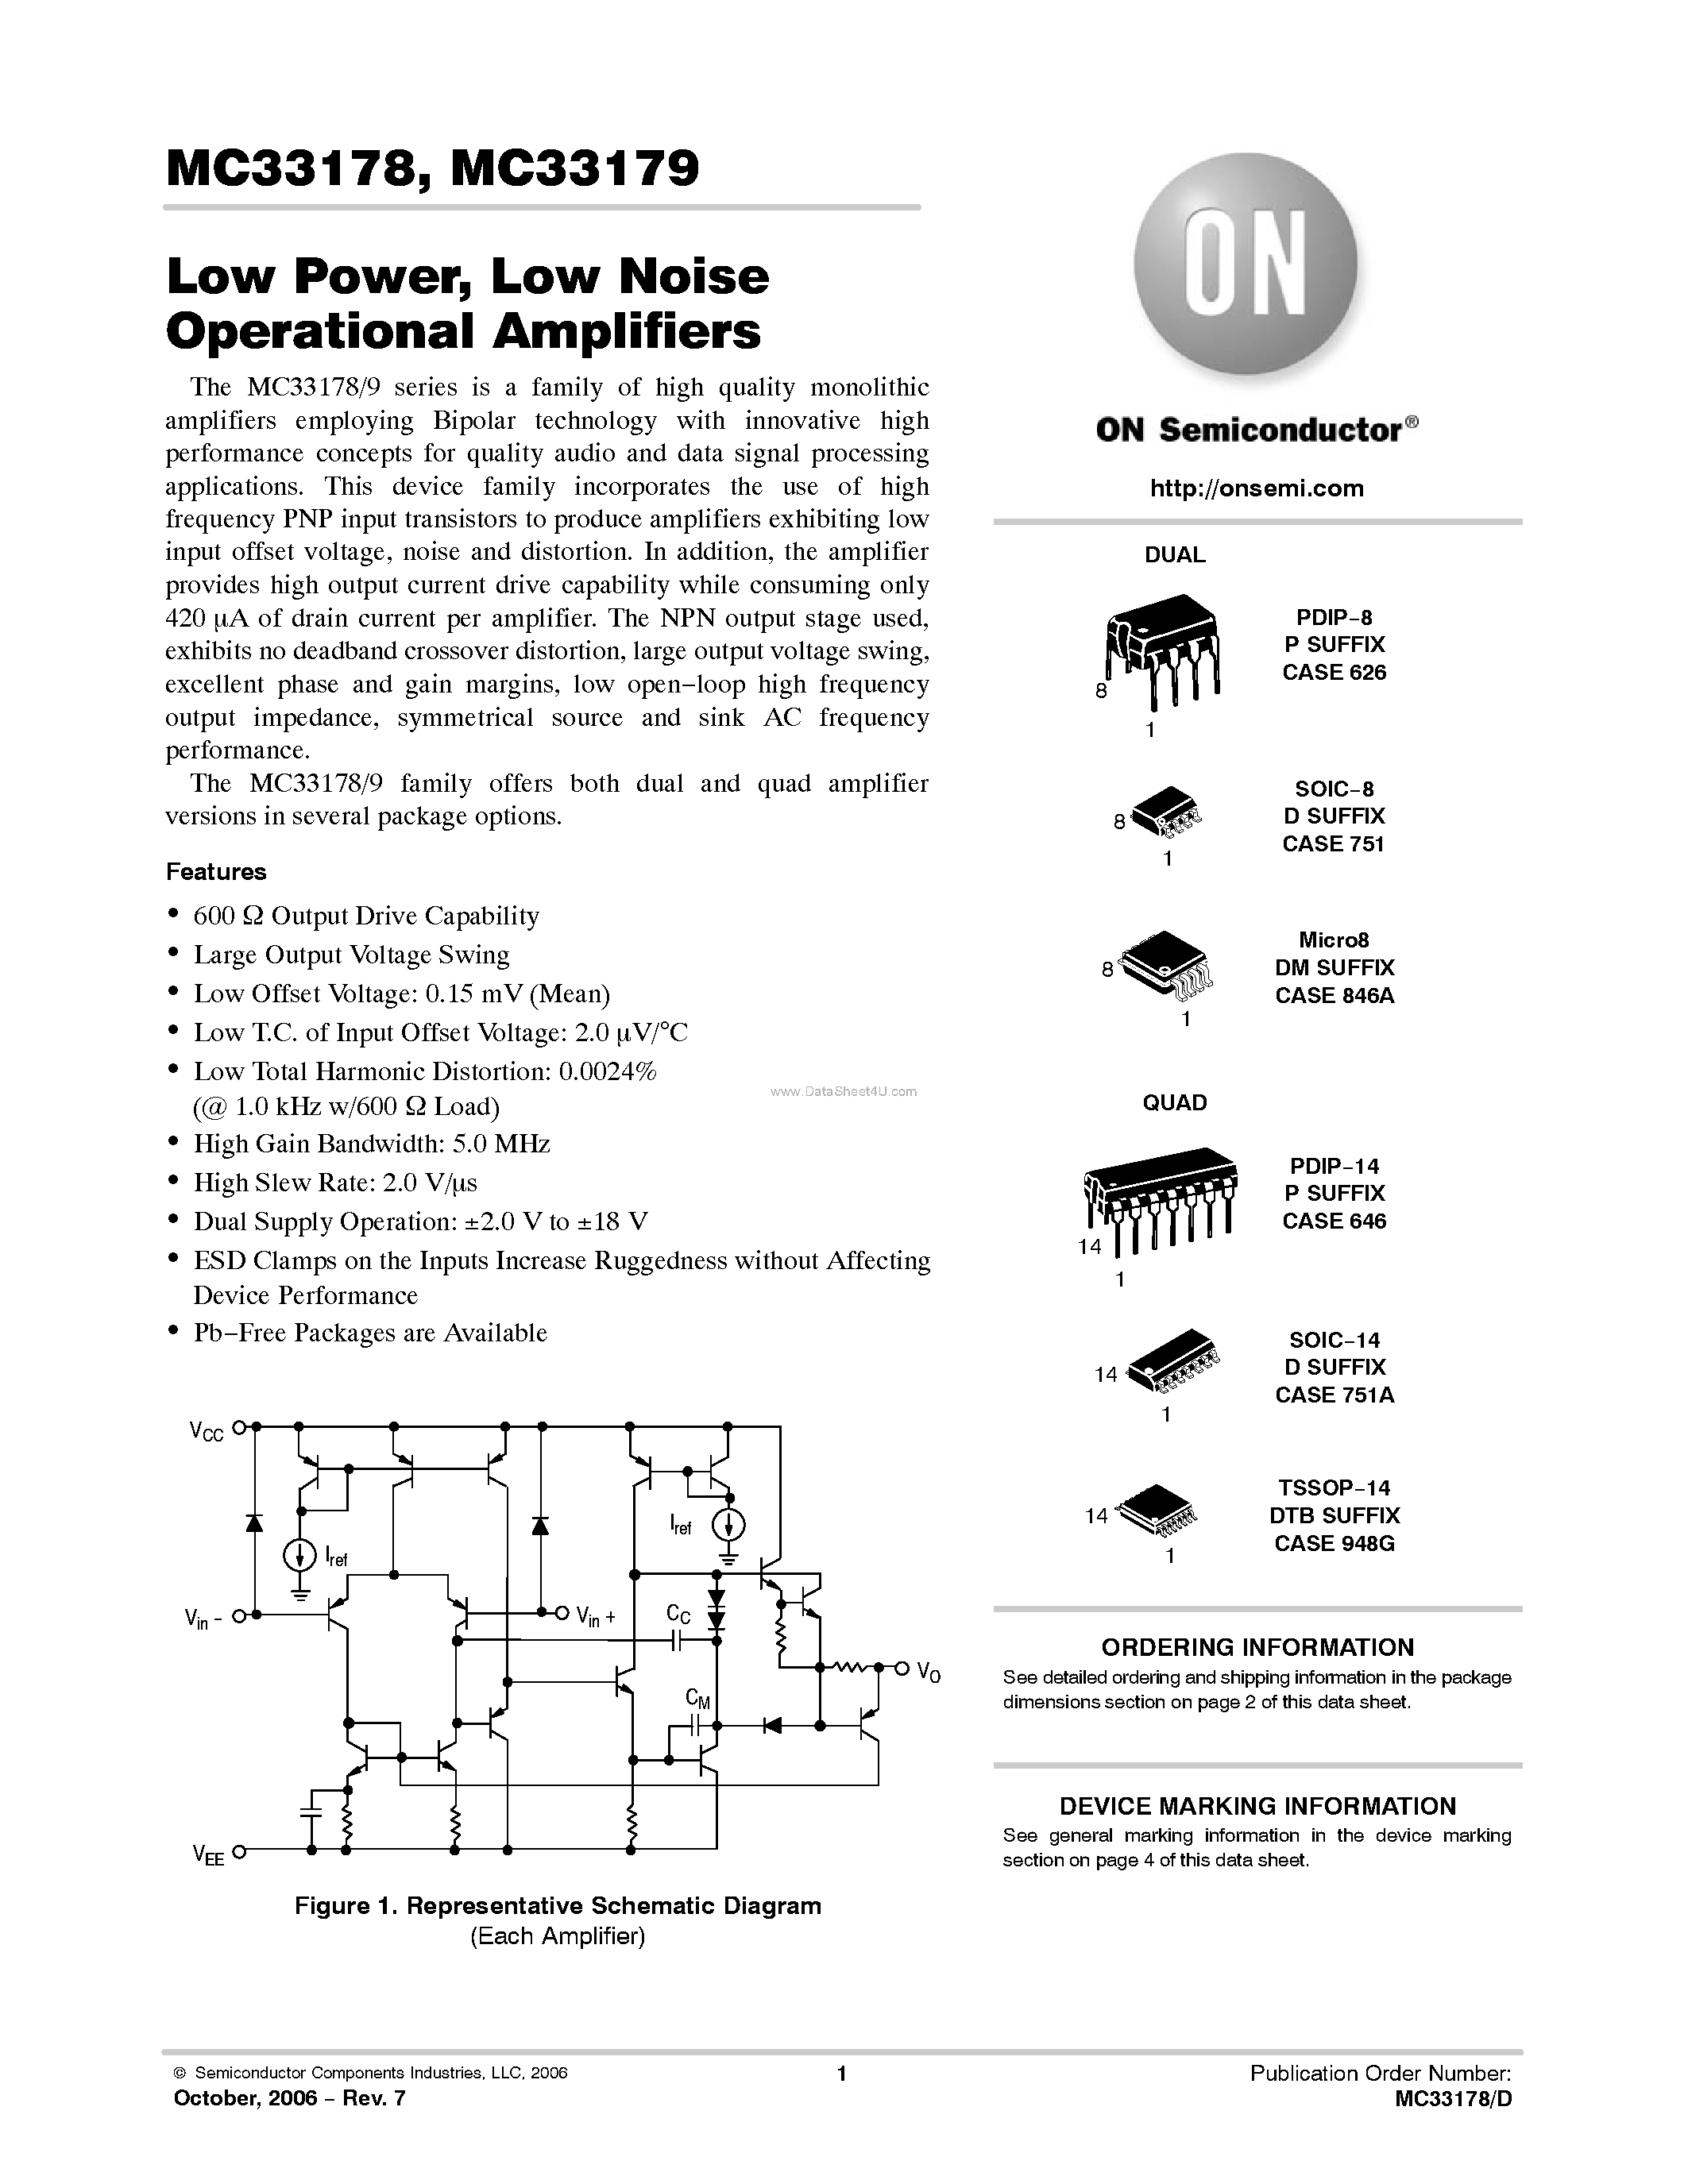 Даташит MC33178 - (MC33178 / MC33179) Low Noise Operational Amplifiers страница 1